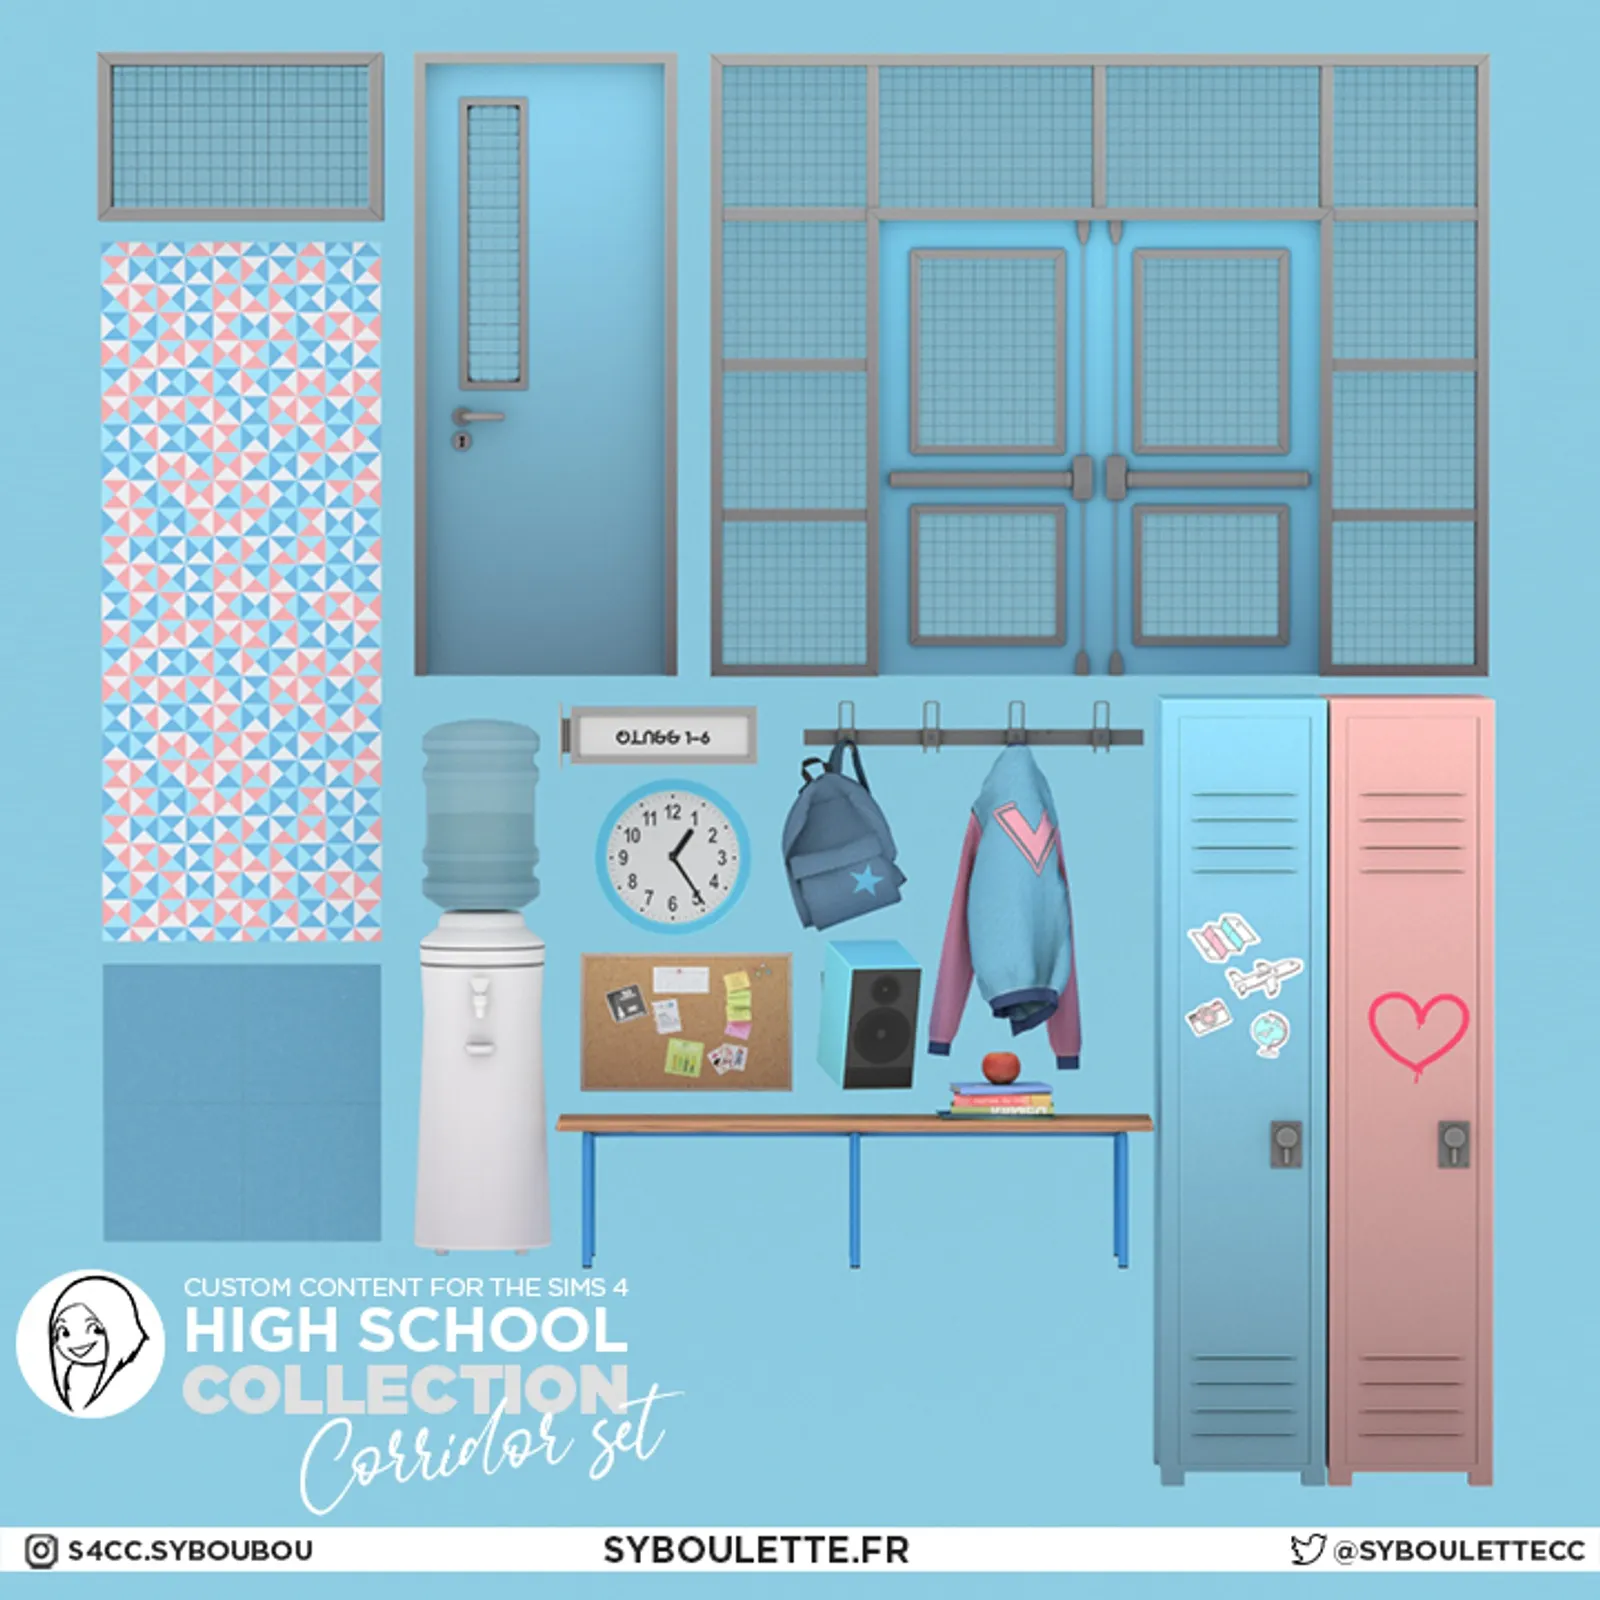 [DOWNLOAD] Highschool collection: Corridor set (part 1)